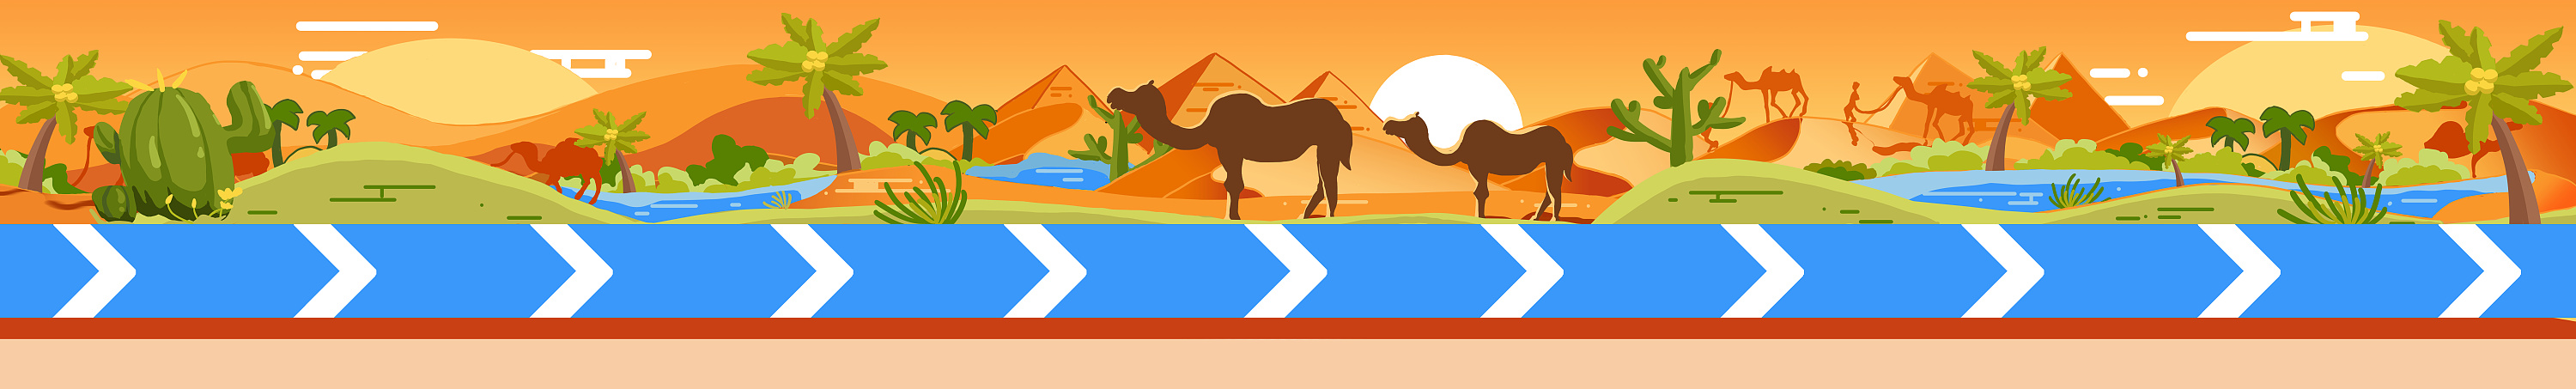 沙漠 骆驼 绿洲|插画|新锐潮流插画|kkkkk_白日梦选手